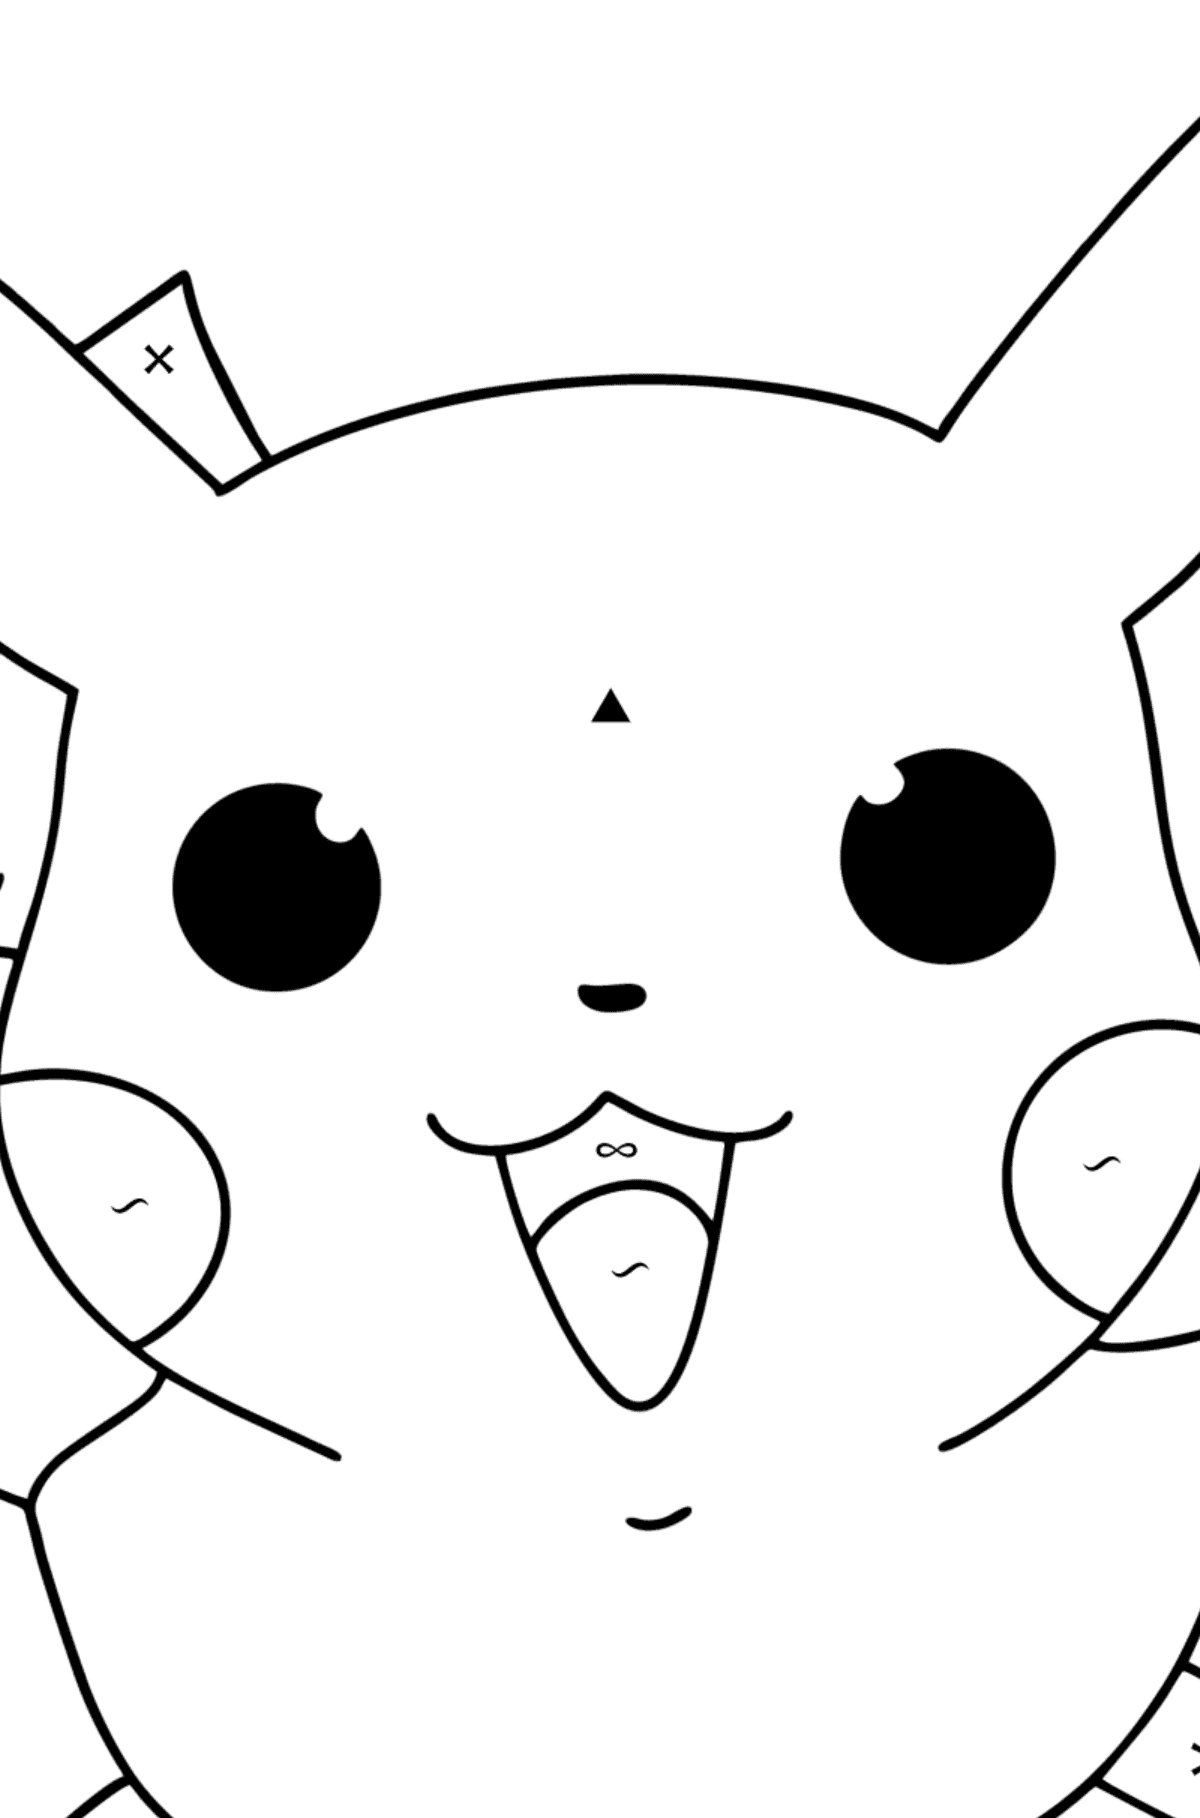 Раскраска Покемон XY Pikachu - По Символам для Детей